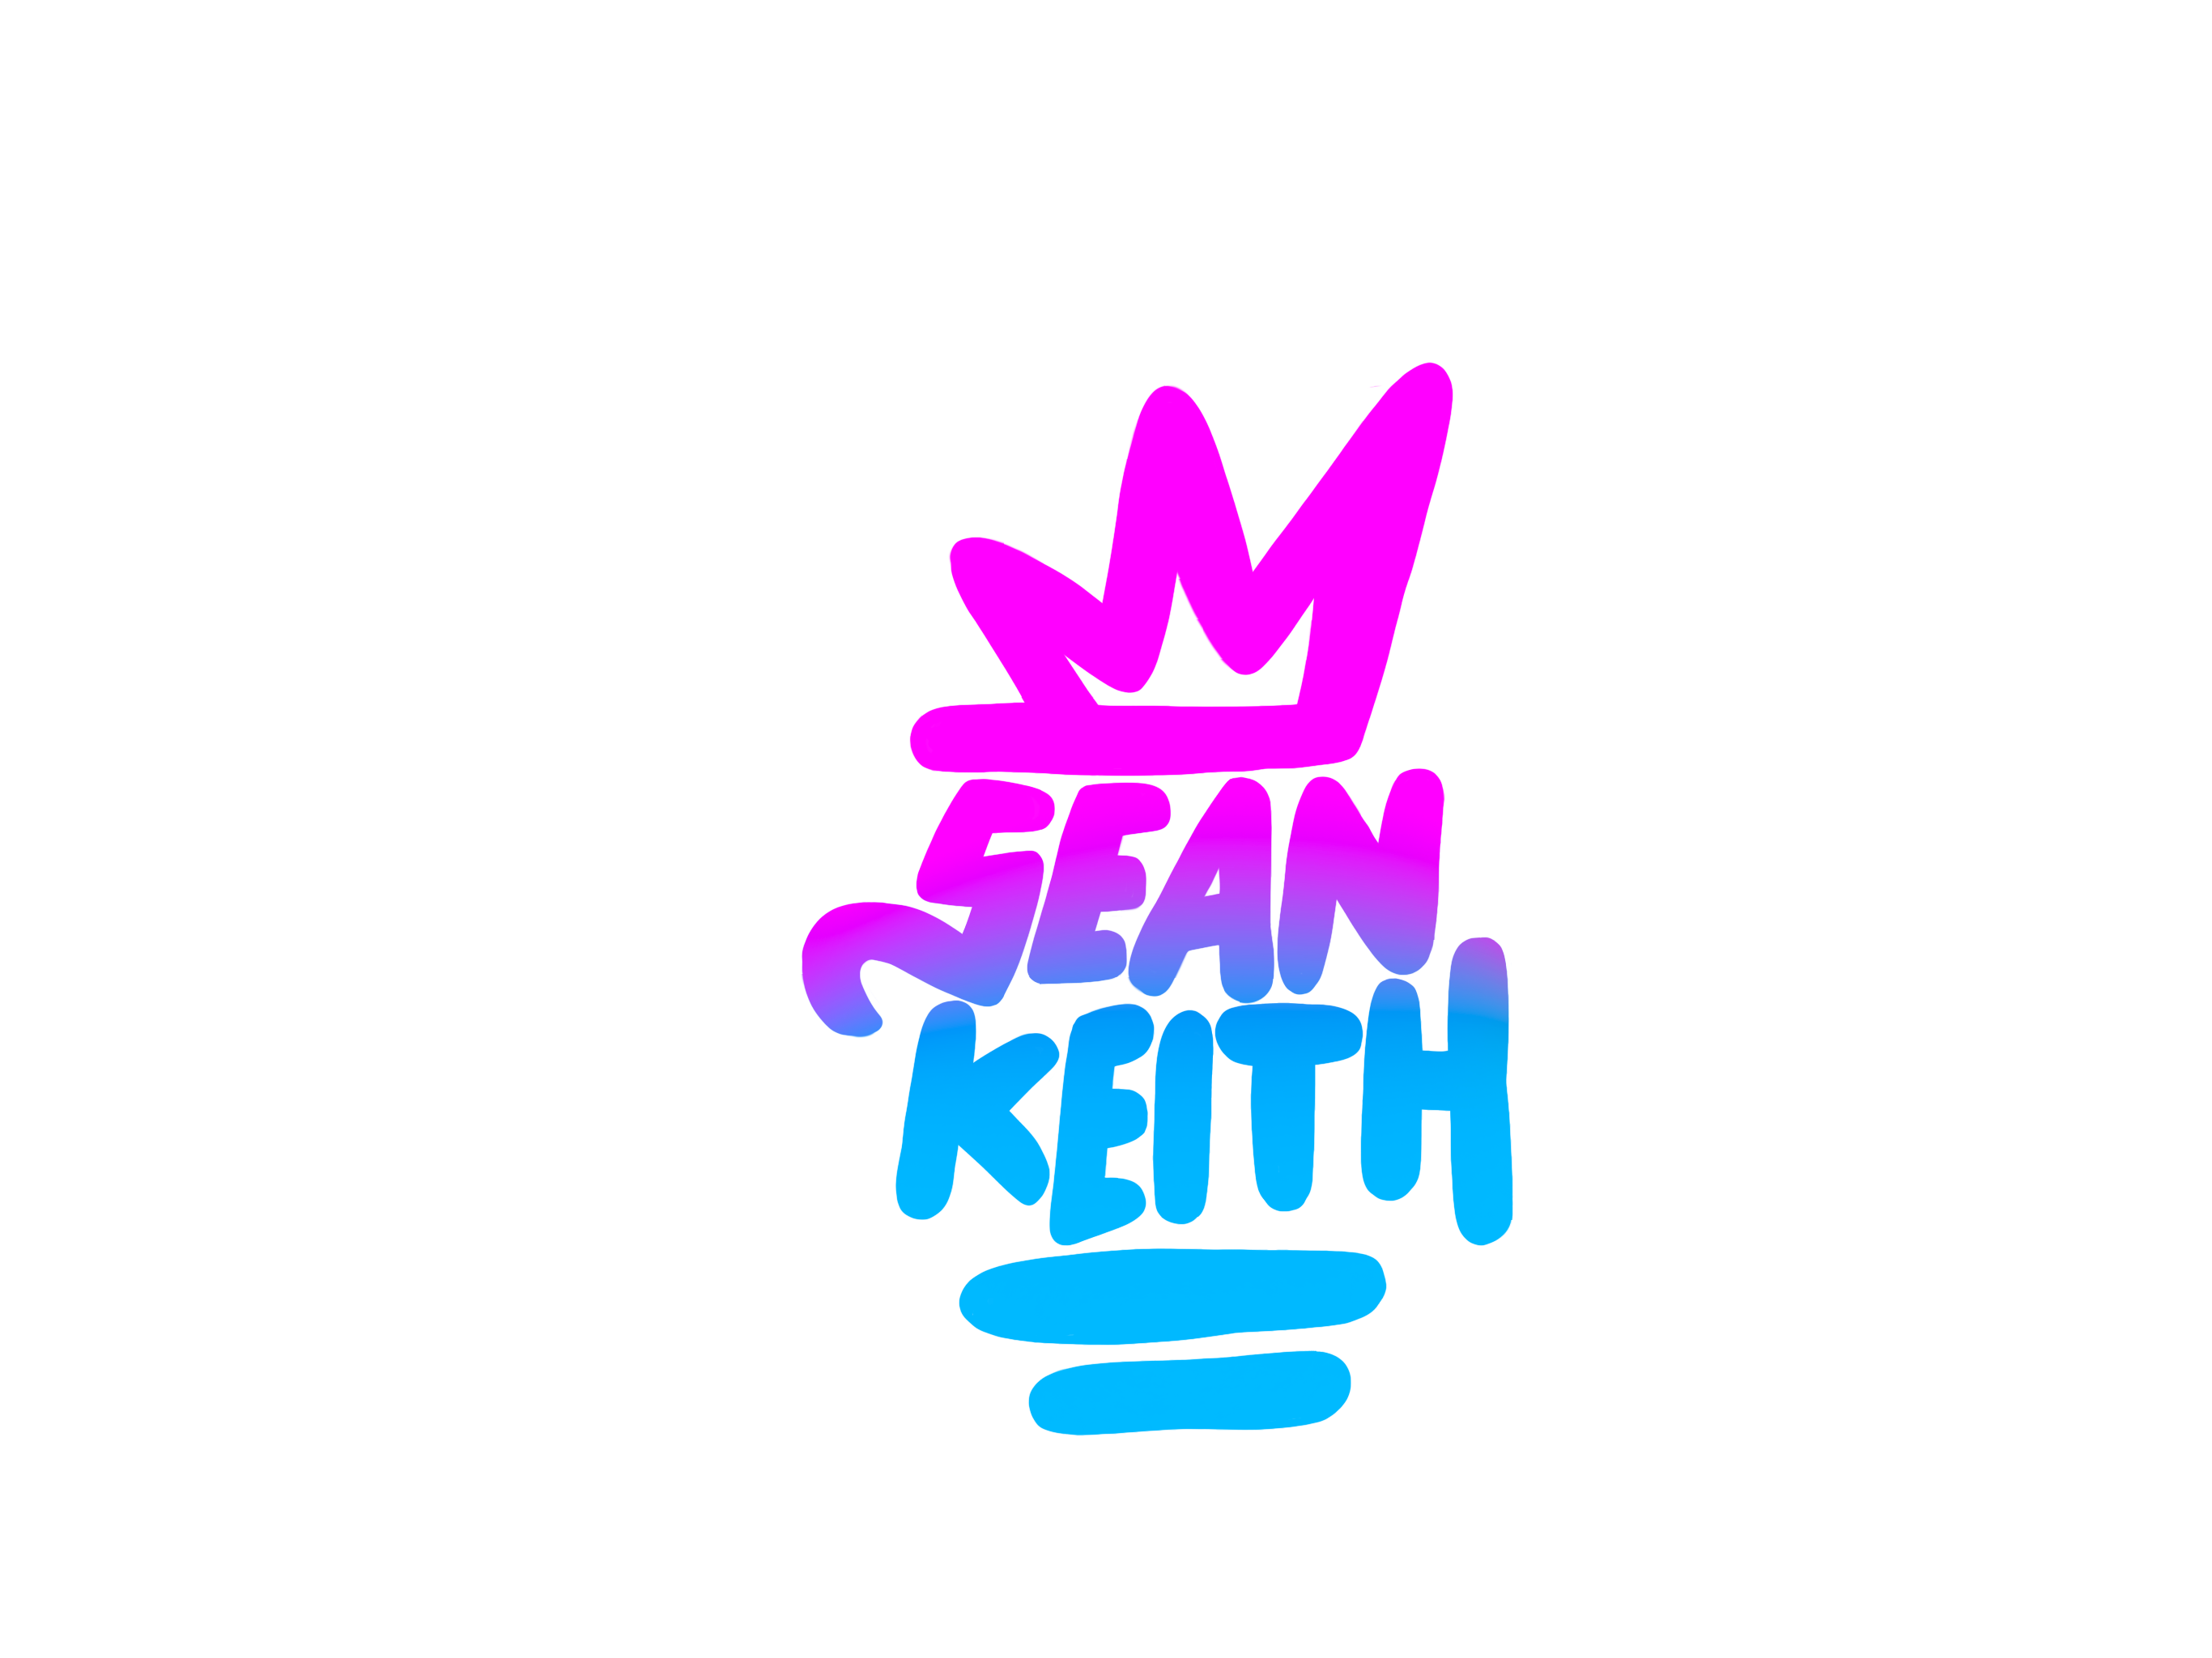 Sean Keith Art